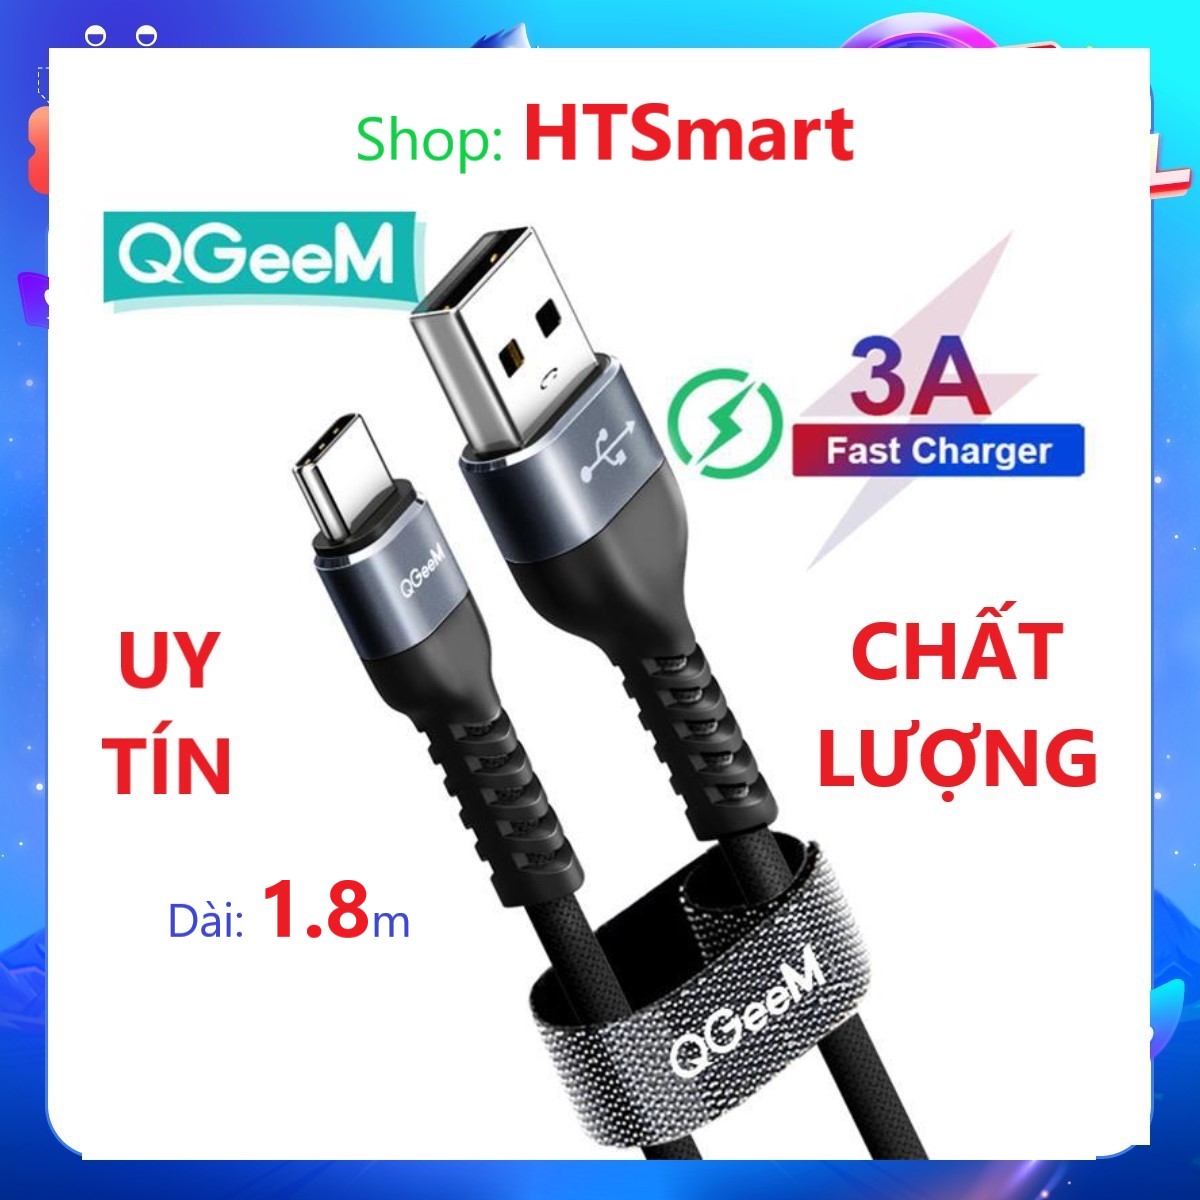 Cáp sạc nhanh QGeeM USB Type C 3A dài 1.8m (Xám Xanh) Siêu bền Truyền dữ liệu tốc độ cao 480 Mbps - Hàng chính hãng